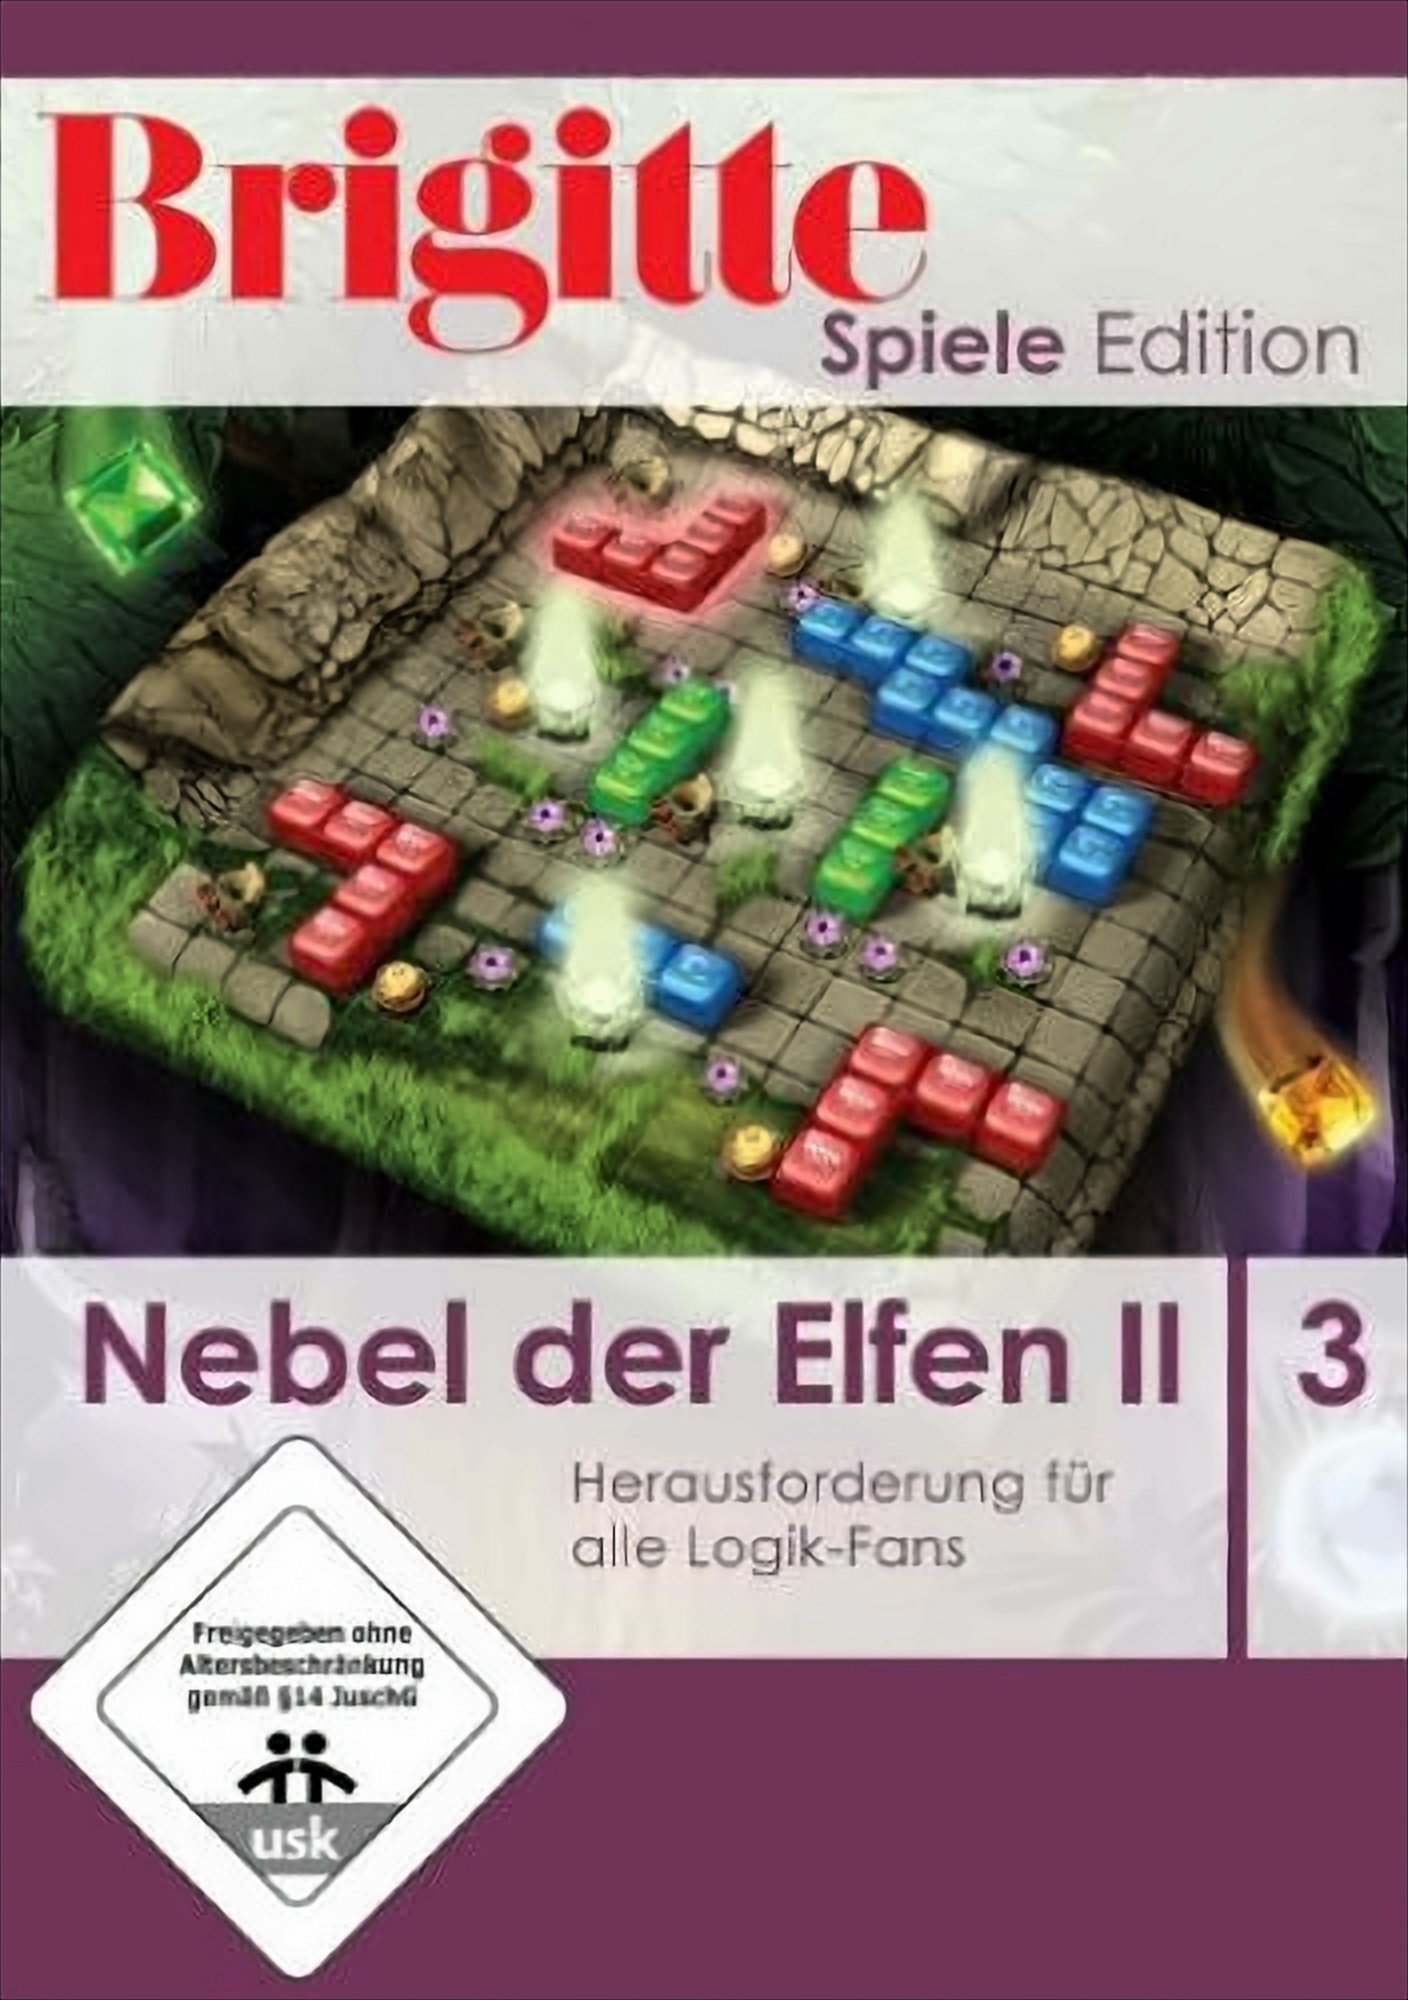 Spiele-Edition: Elfen der 2 - Brigitte [PC] Nebel